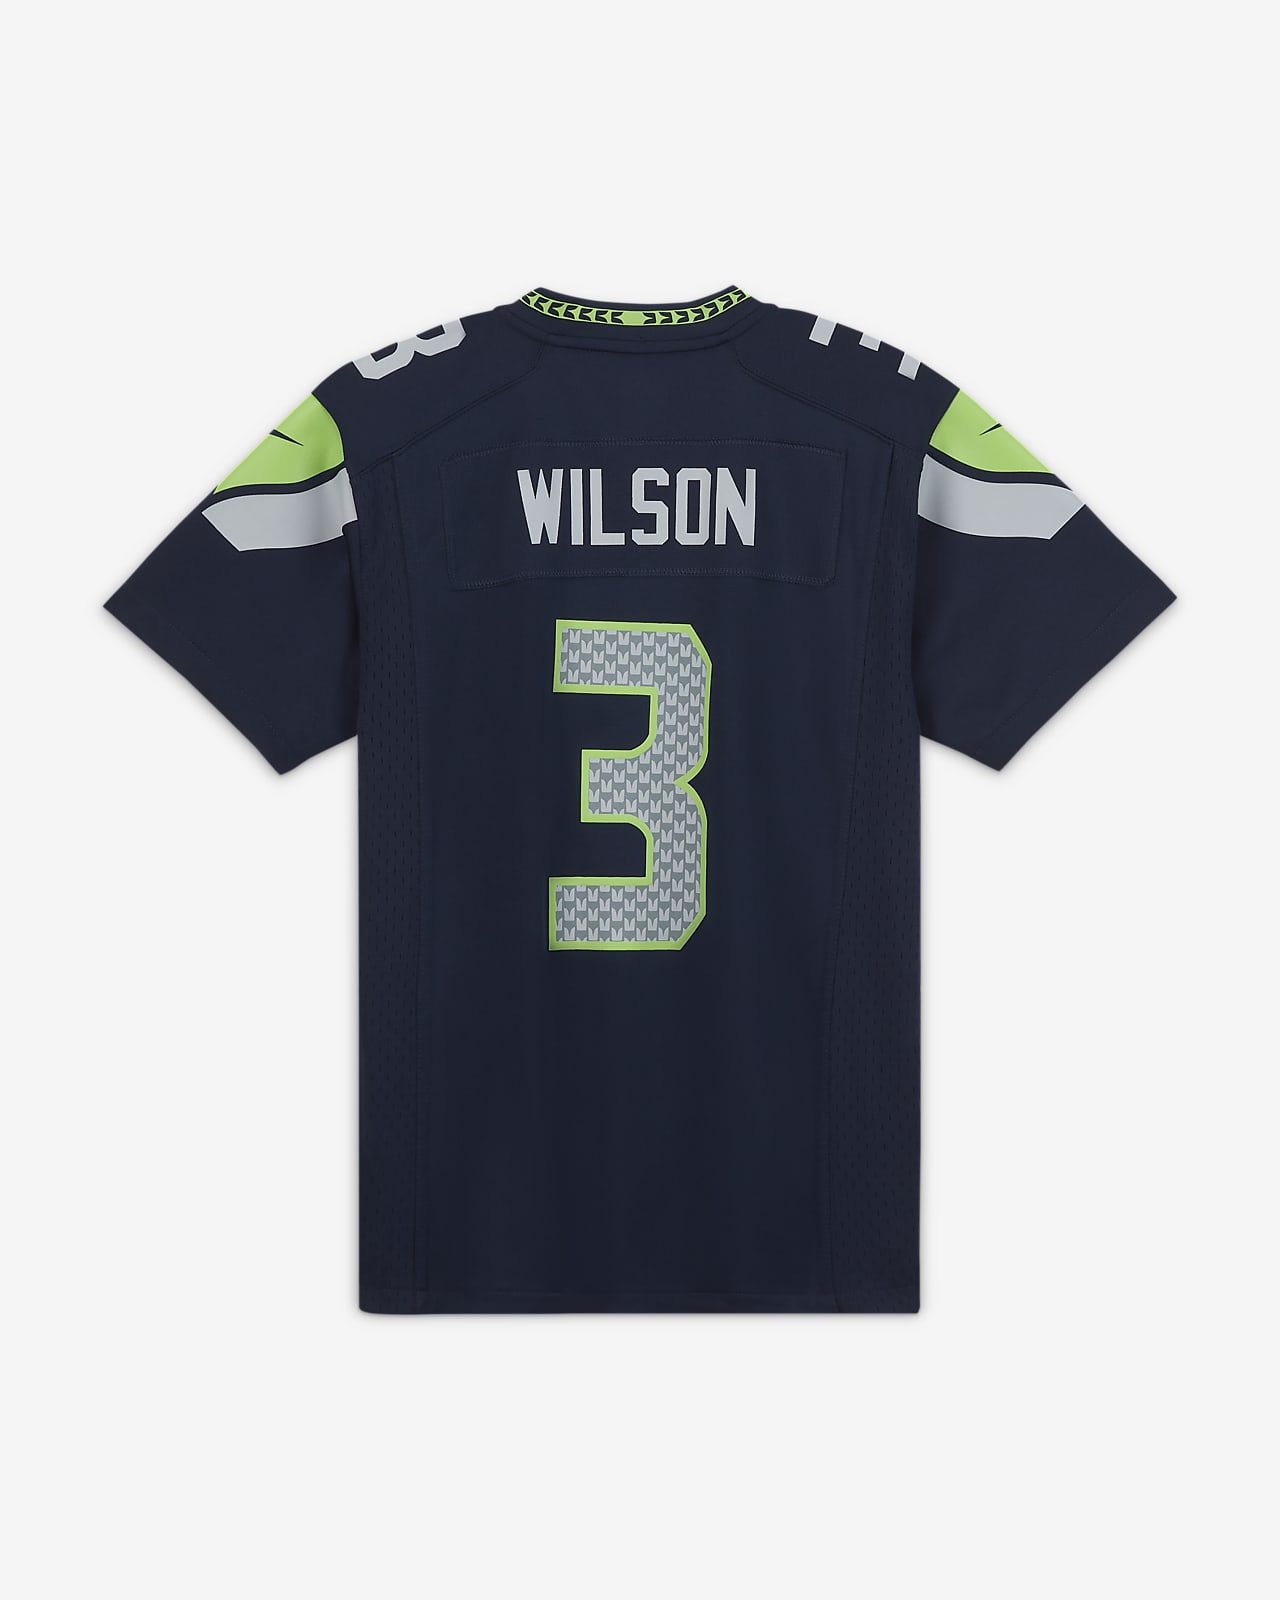 NFL Seattle Seahawks (Russell Wilson 